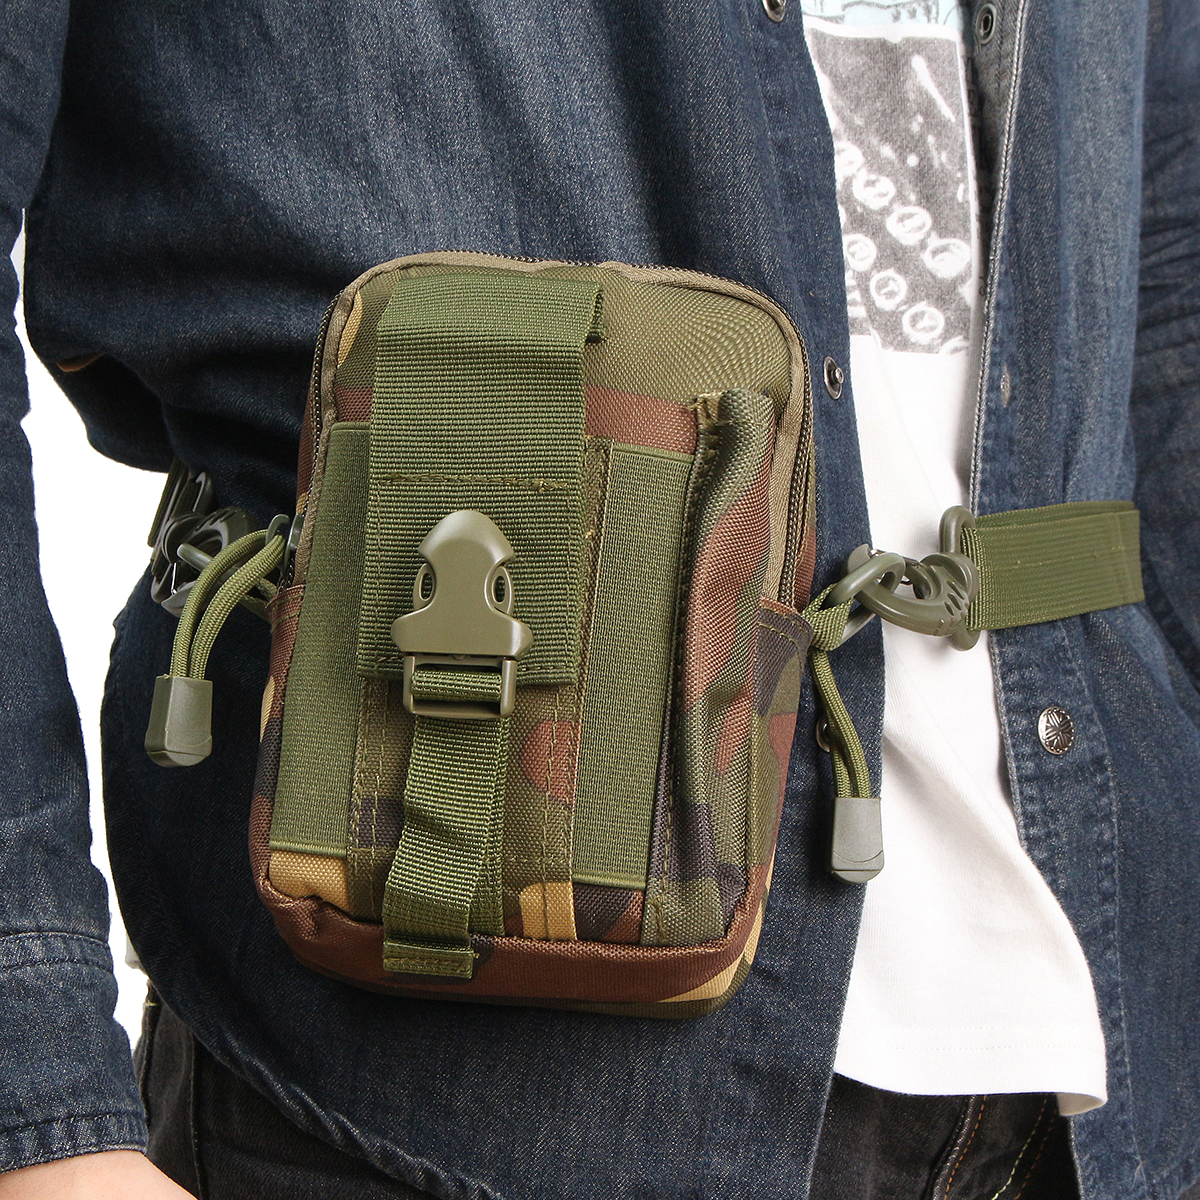 Waterproof-Tactical-Waist-Bag-Belt-Pouch-Hiking-Camp-Phone-Pocket-Waist-Shoulder-Bags-1817226-14